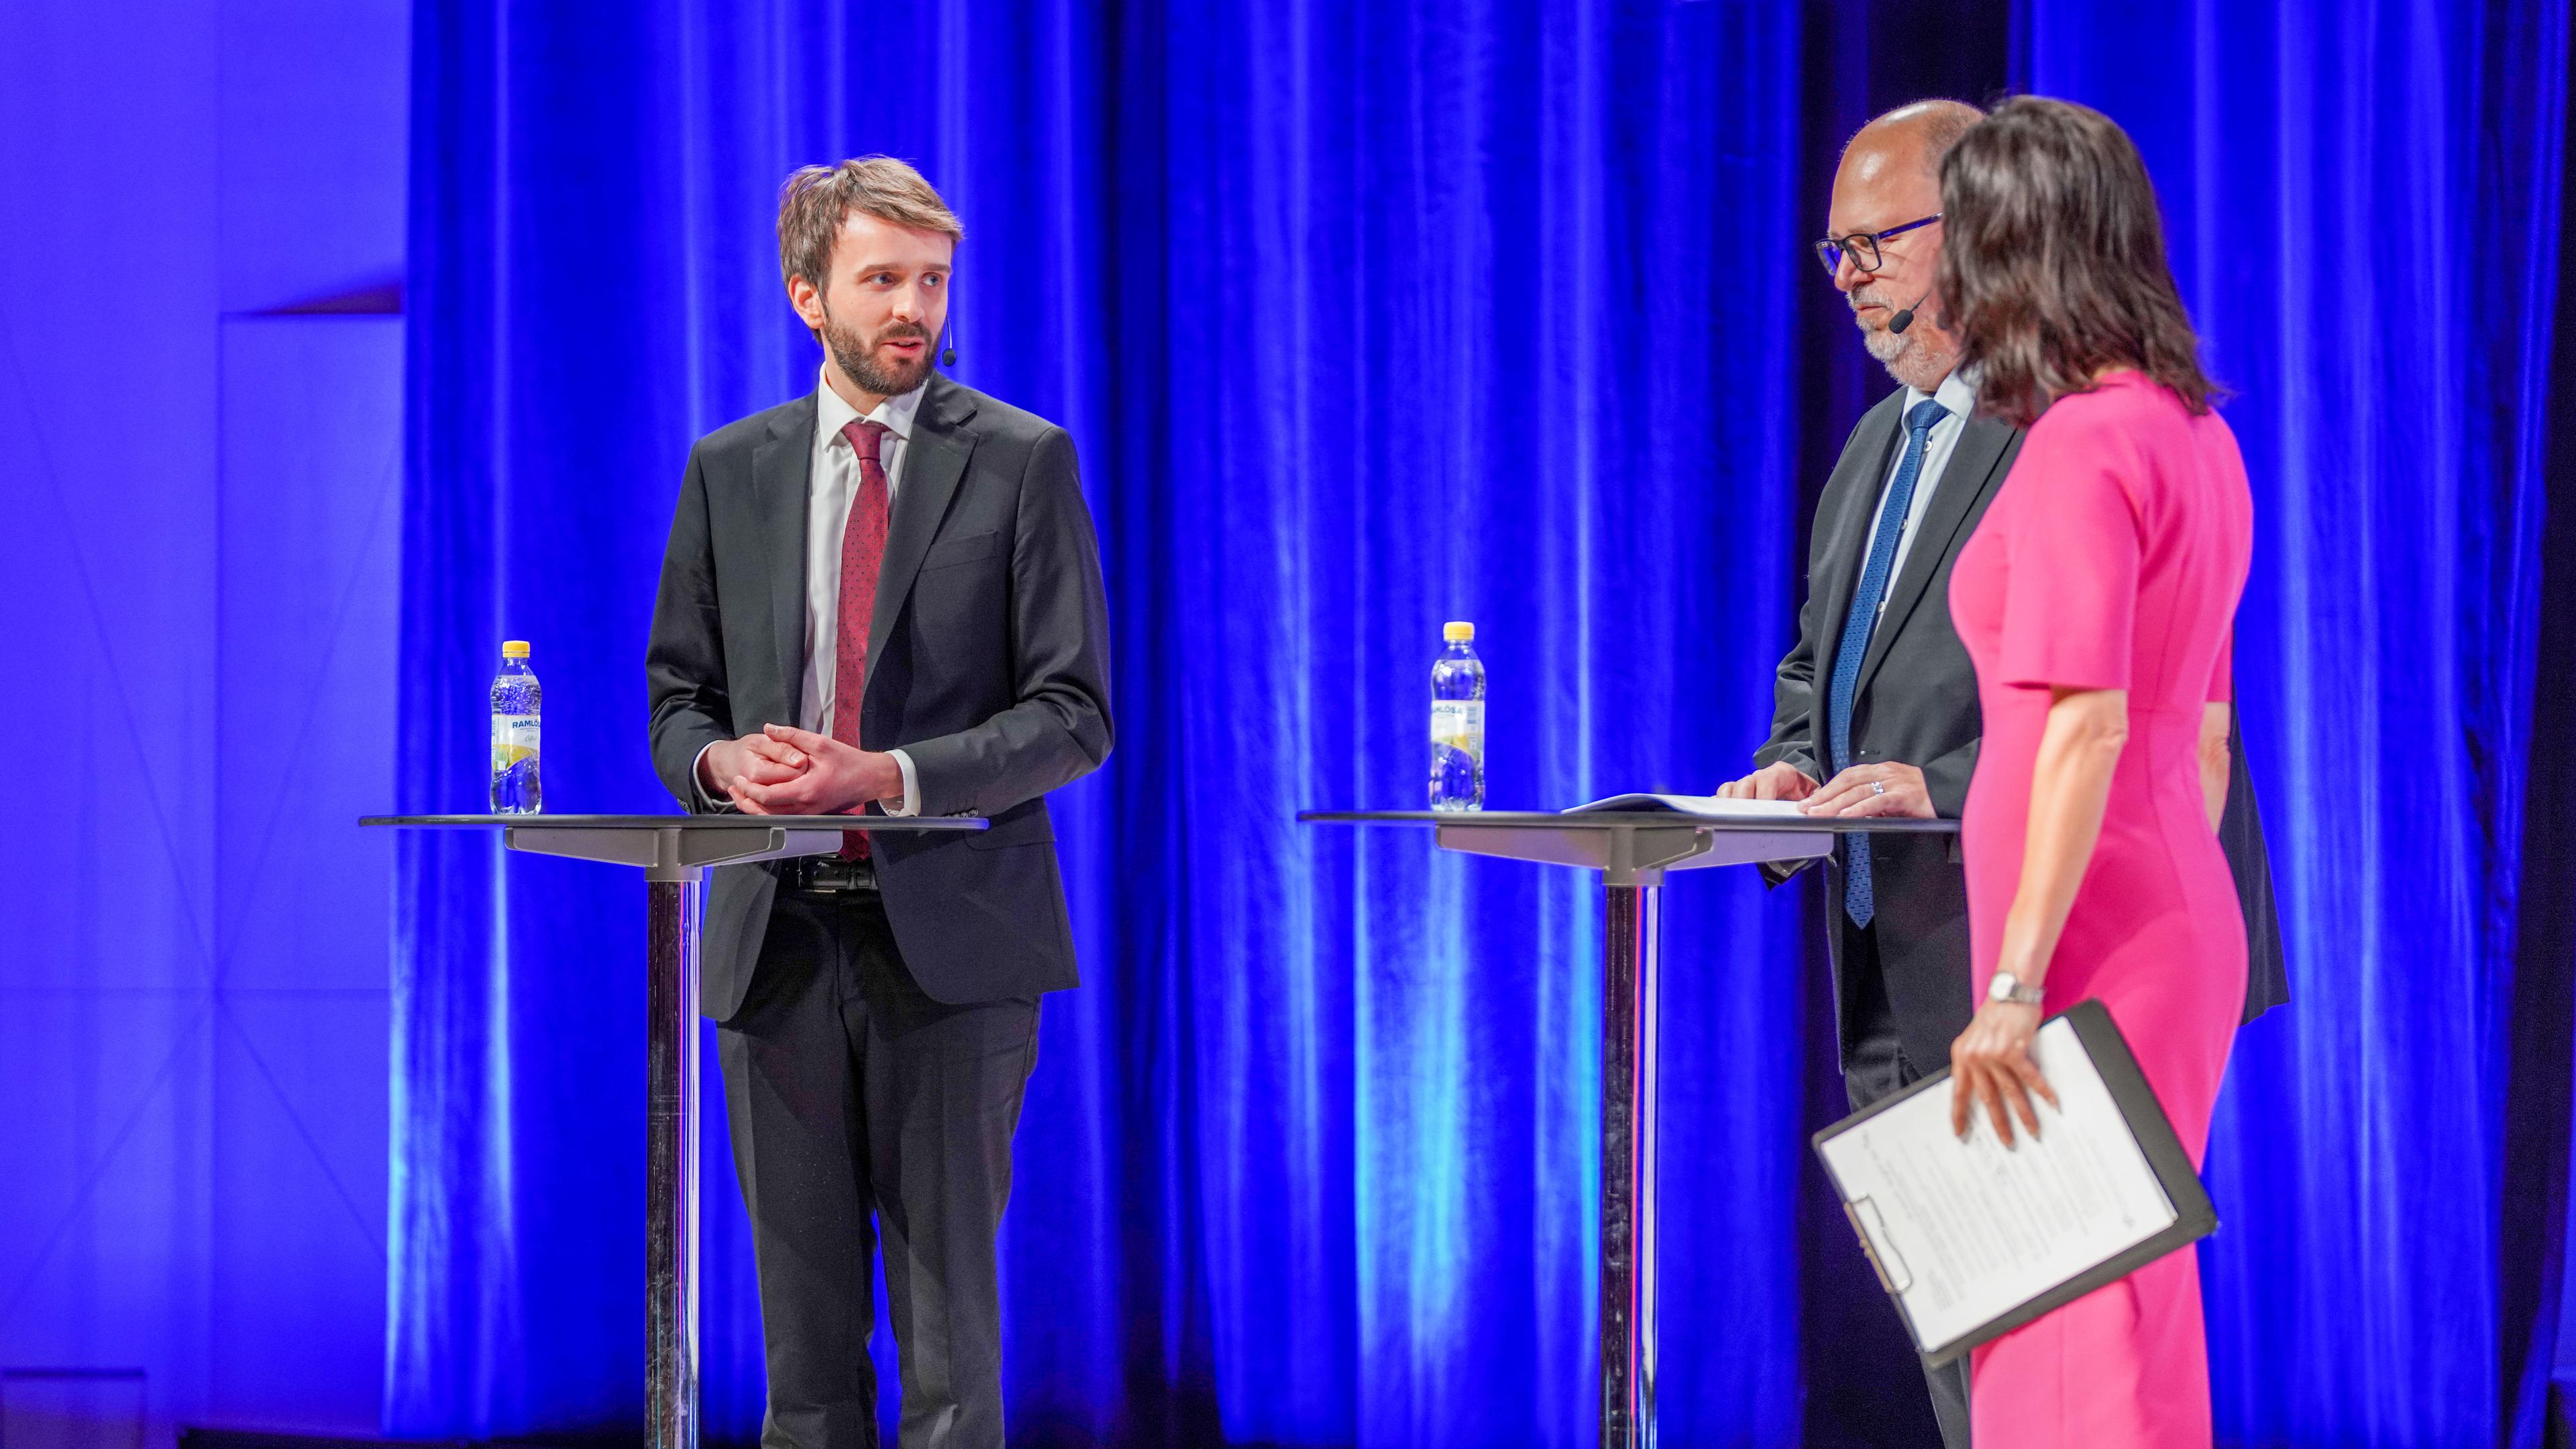 Næringsminister Vestre sammen med den svenske næringsministeren Karl-Petter Thorwaldsson og konferansier Siri Lill Mannes.